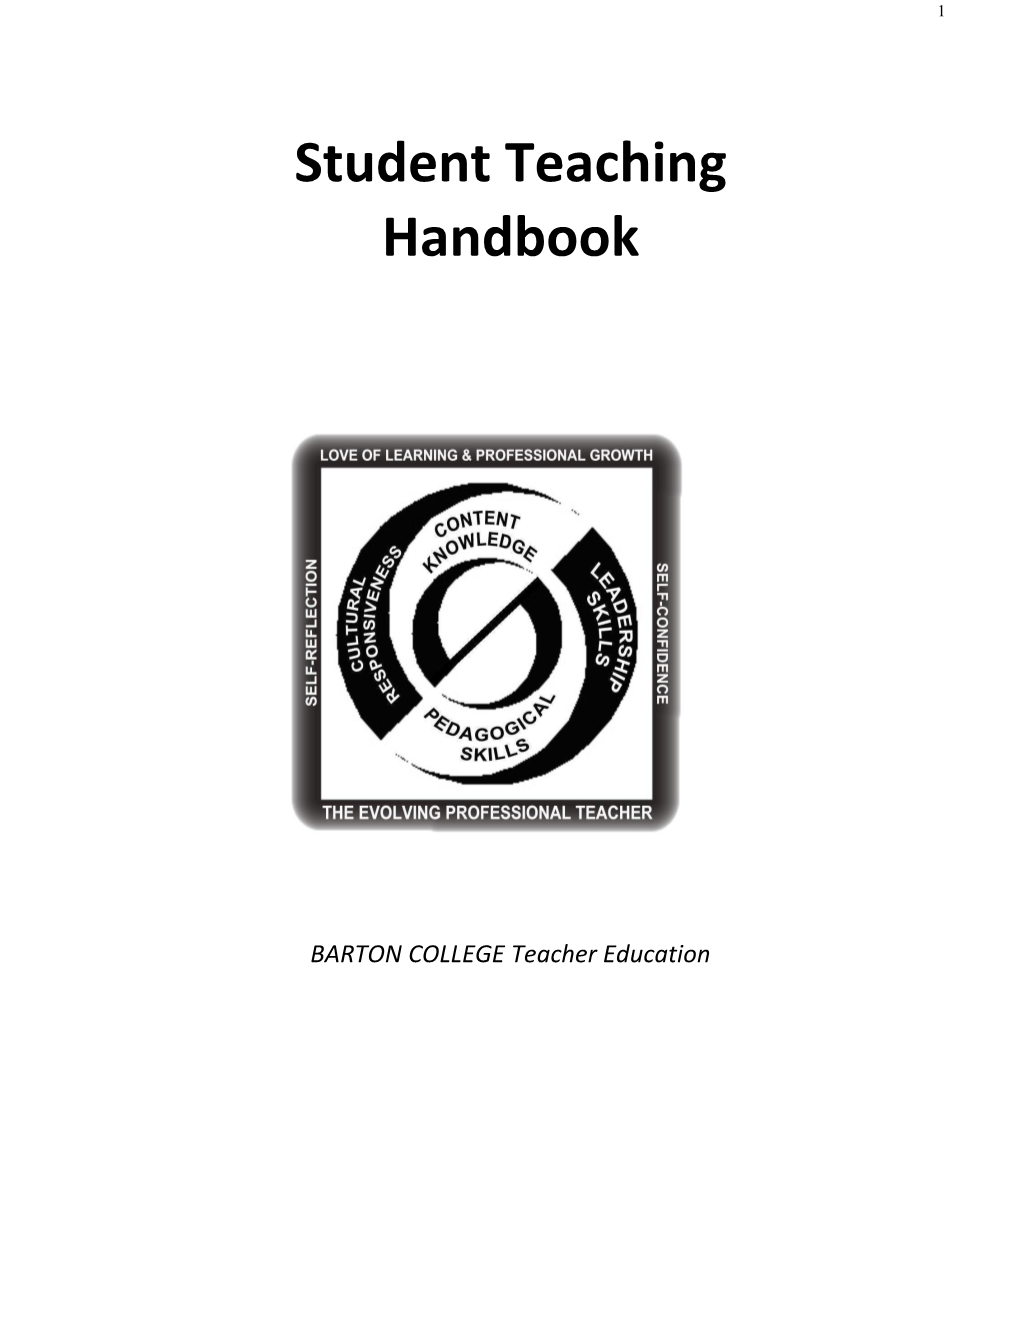 Student Teacher Handbook